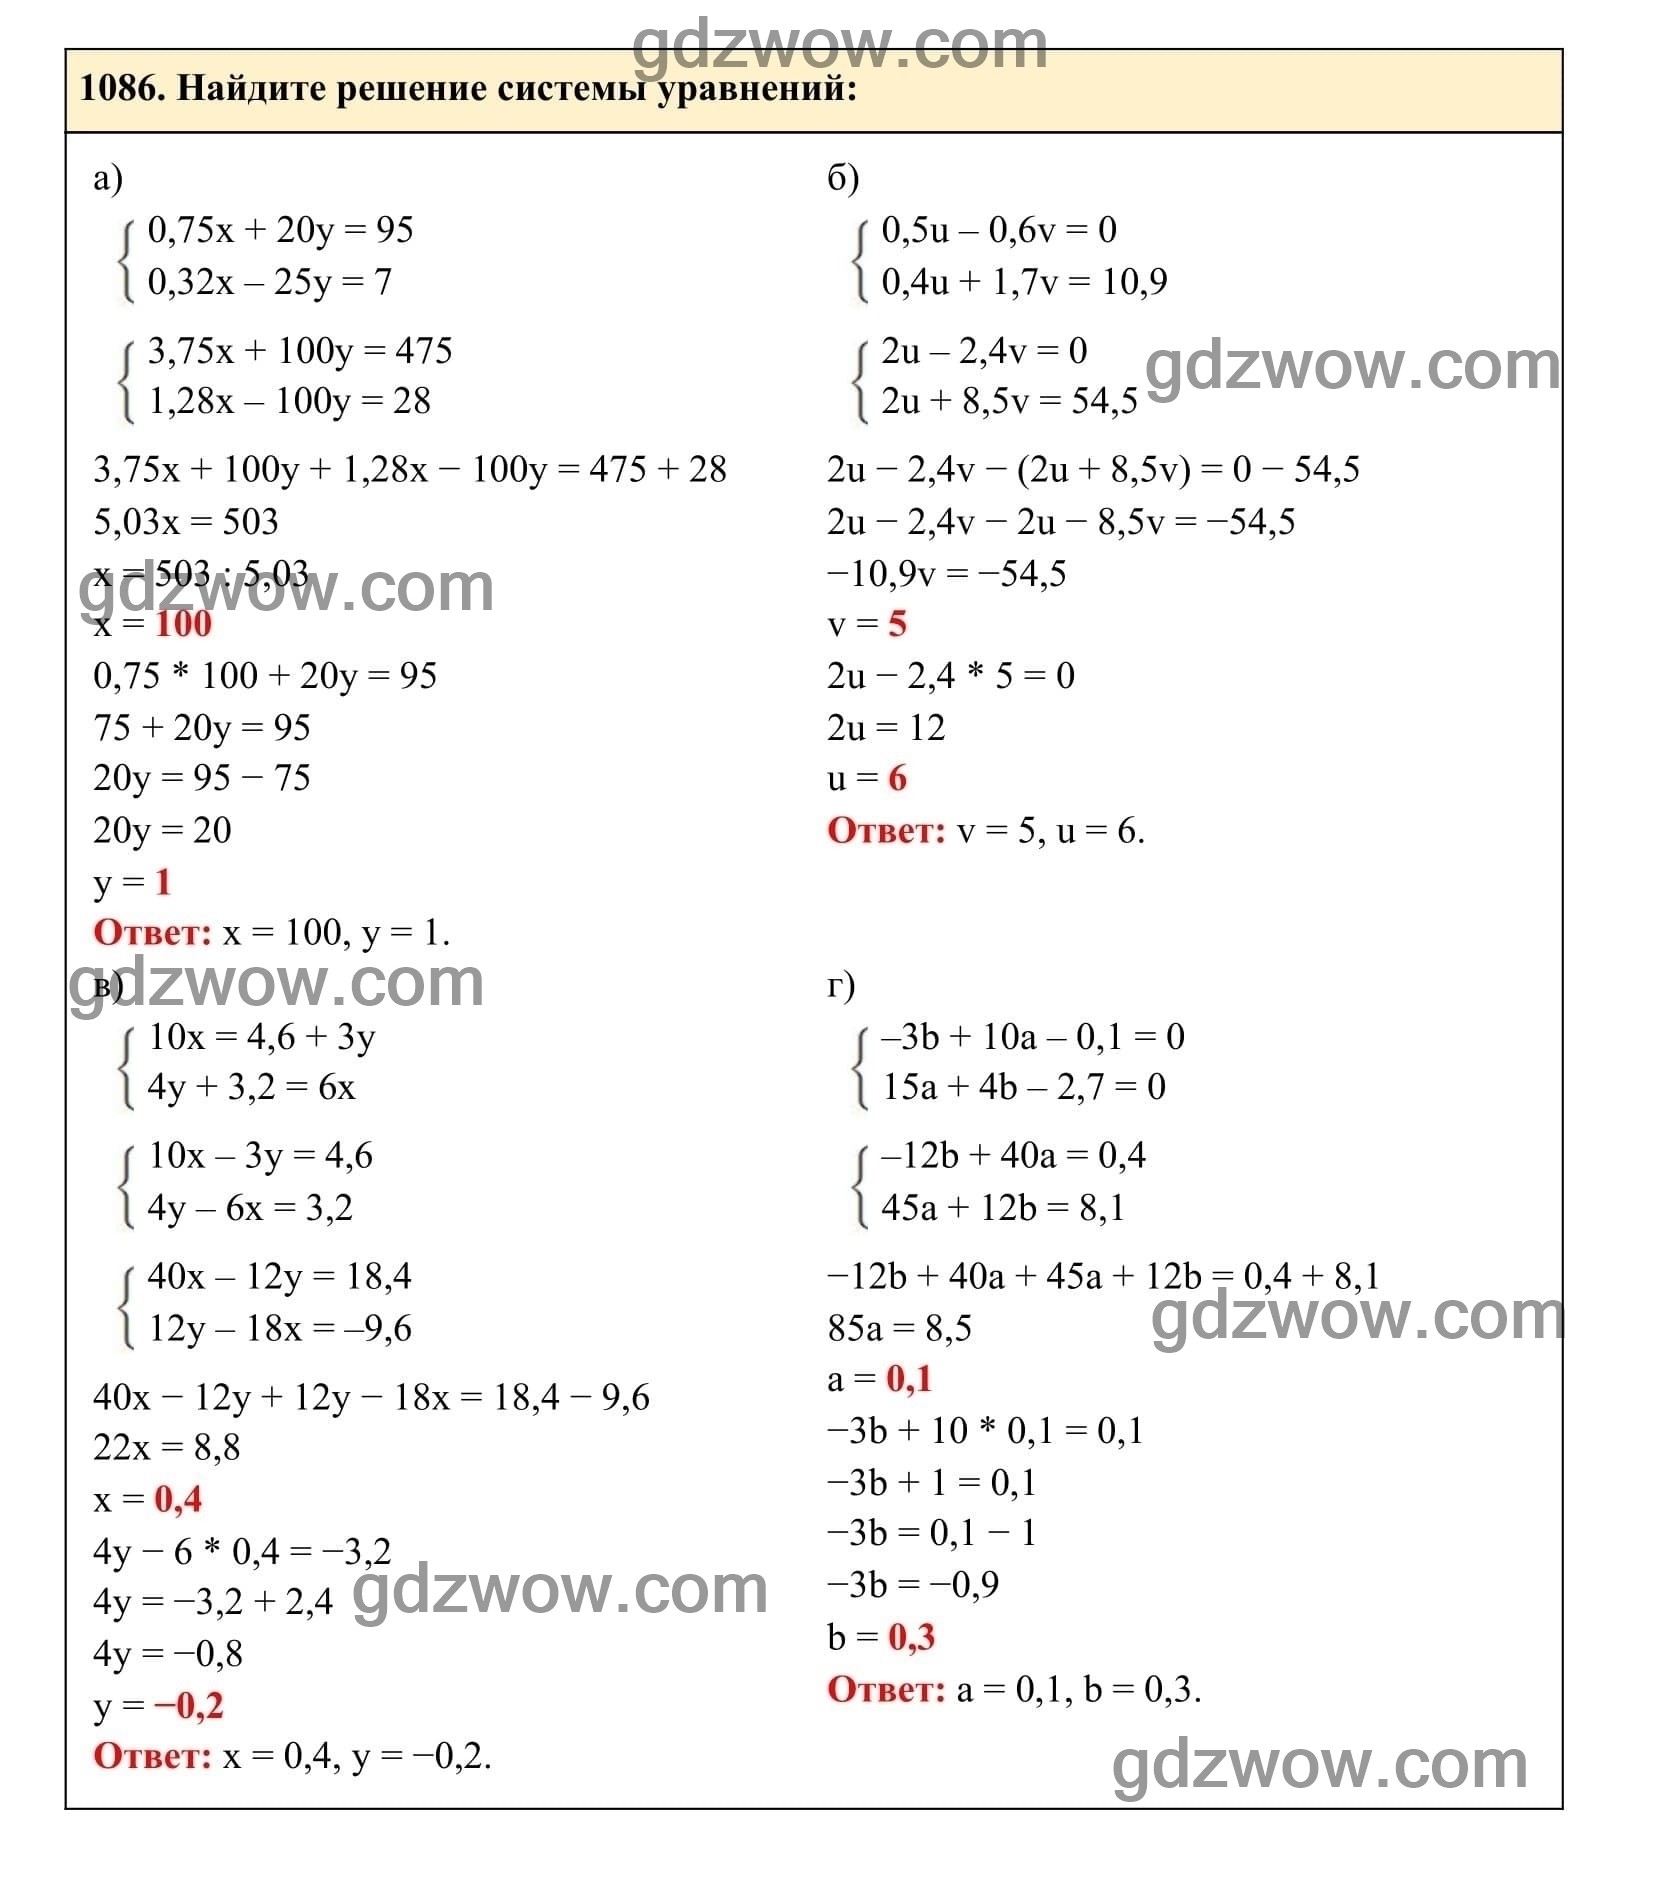 Упражнение 1086 - ГДЗ по Алгебре 7 класс Учебник Макарычев (решебник) - GDZwow